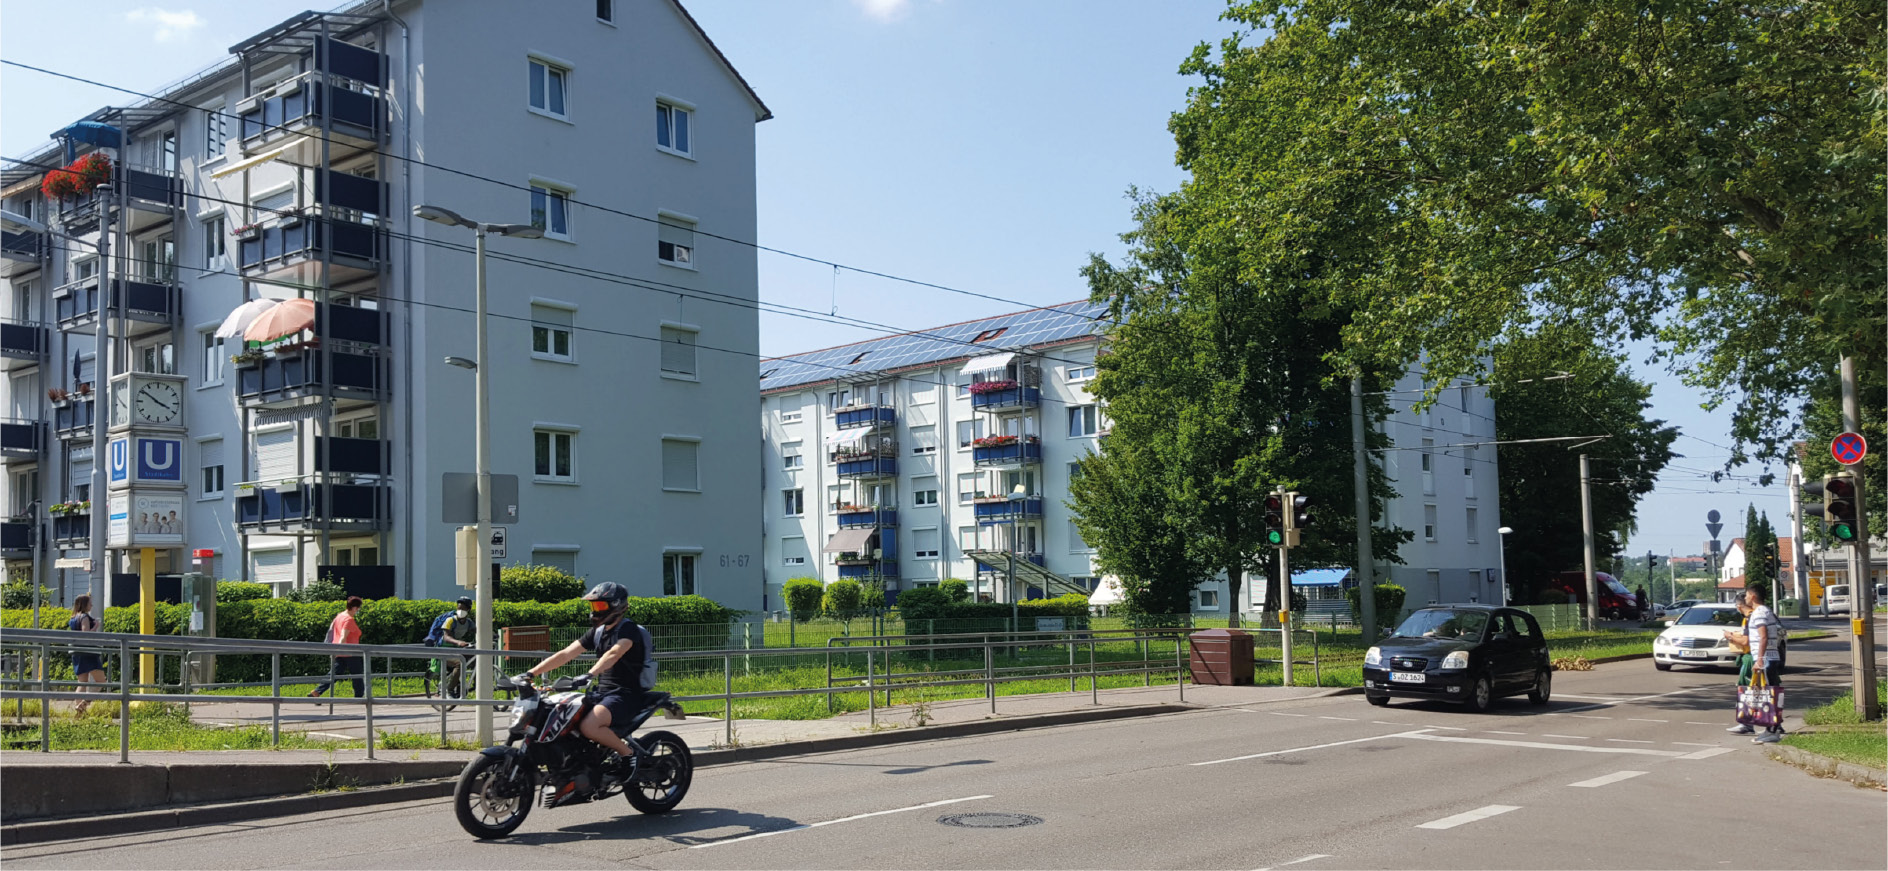 Mehrgeschossige Zeilenbauten und großzügige, gliedernde Grünflächen sind prägend für den Stadtraum in Stuttgart-Rot. Die viel befahrene Haldenrainstraße verläuft in Ost-West-Richtung durch das Quartier und wird von der Stadtbahnlinie U7 flankiert.